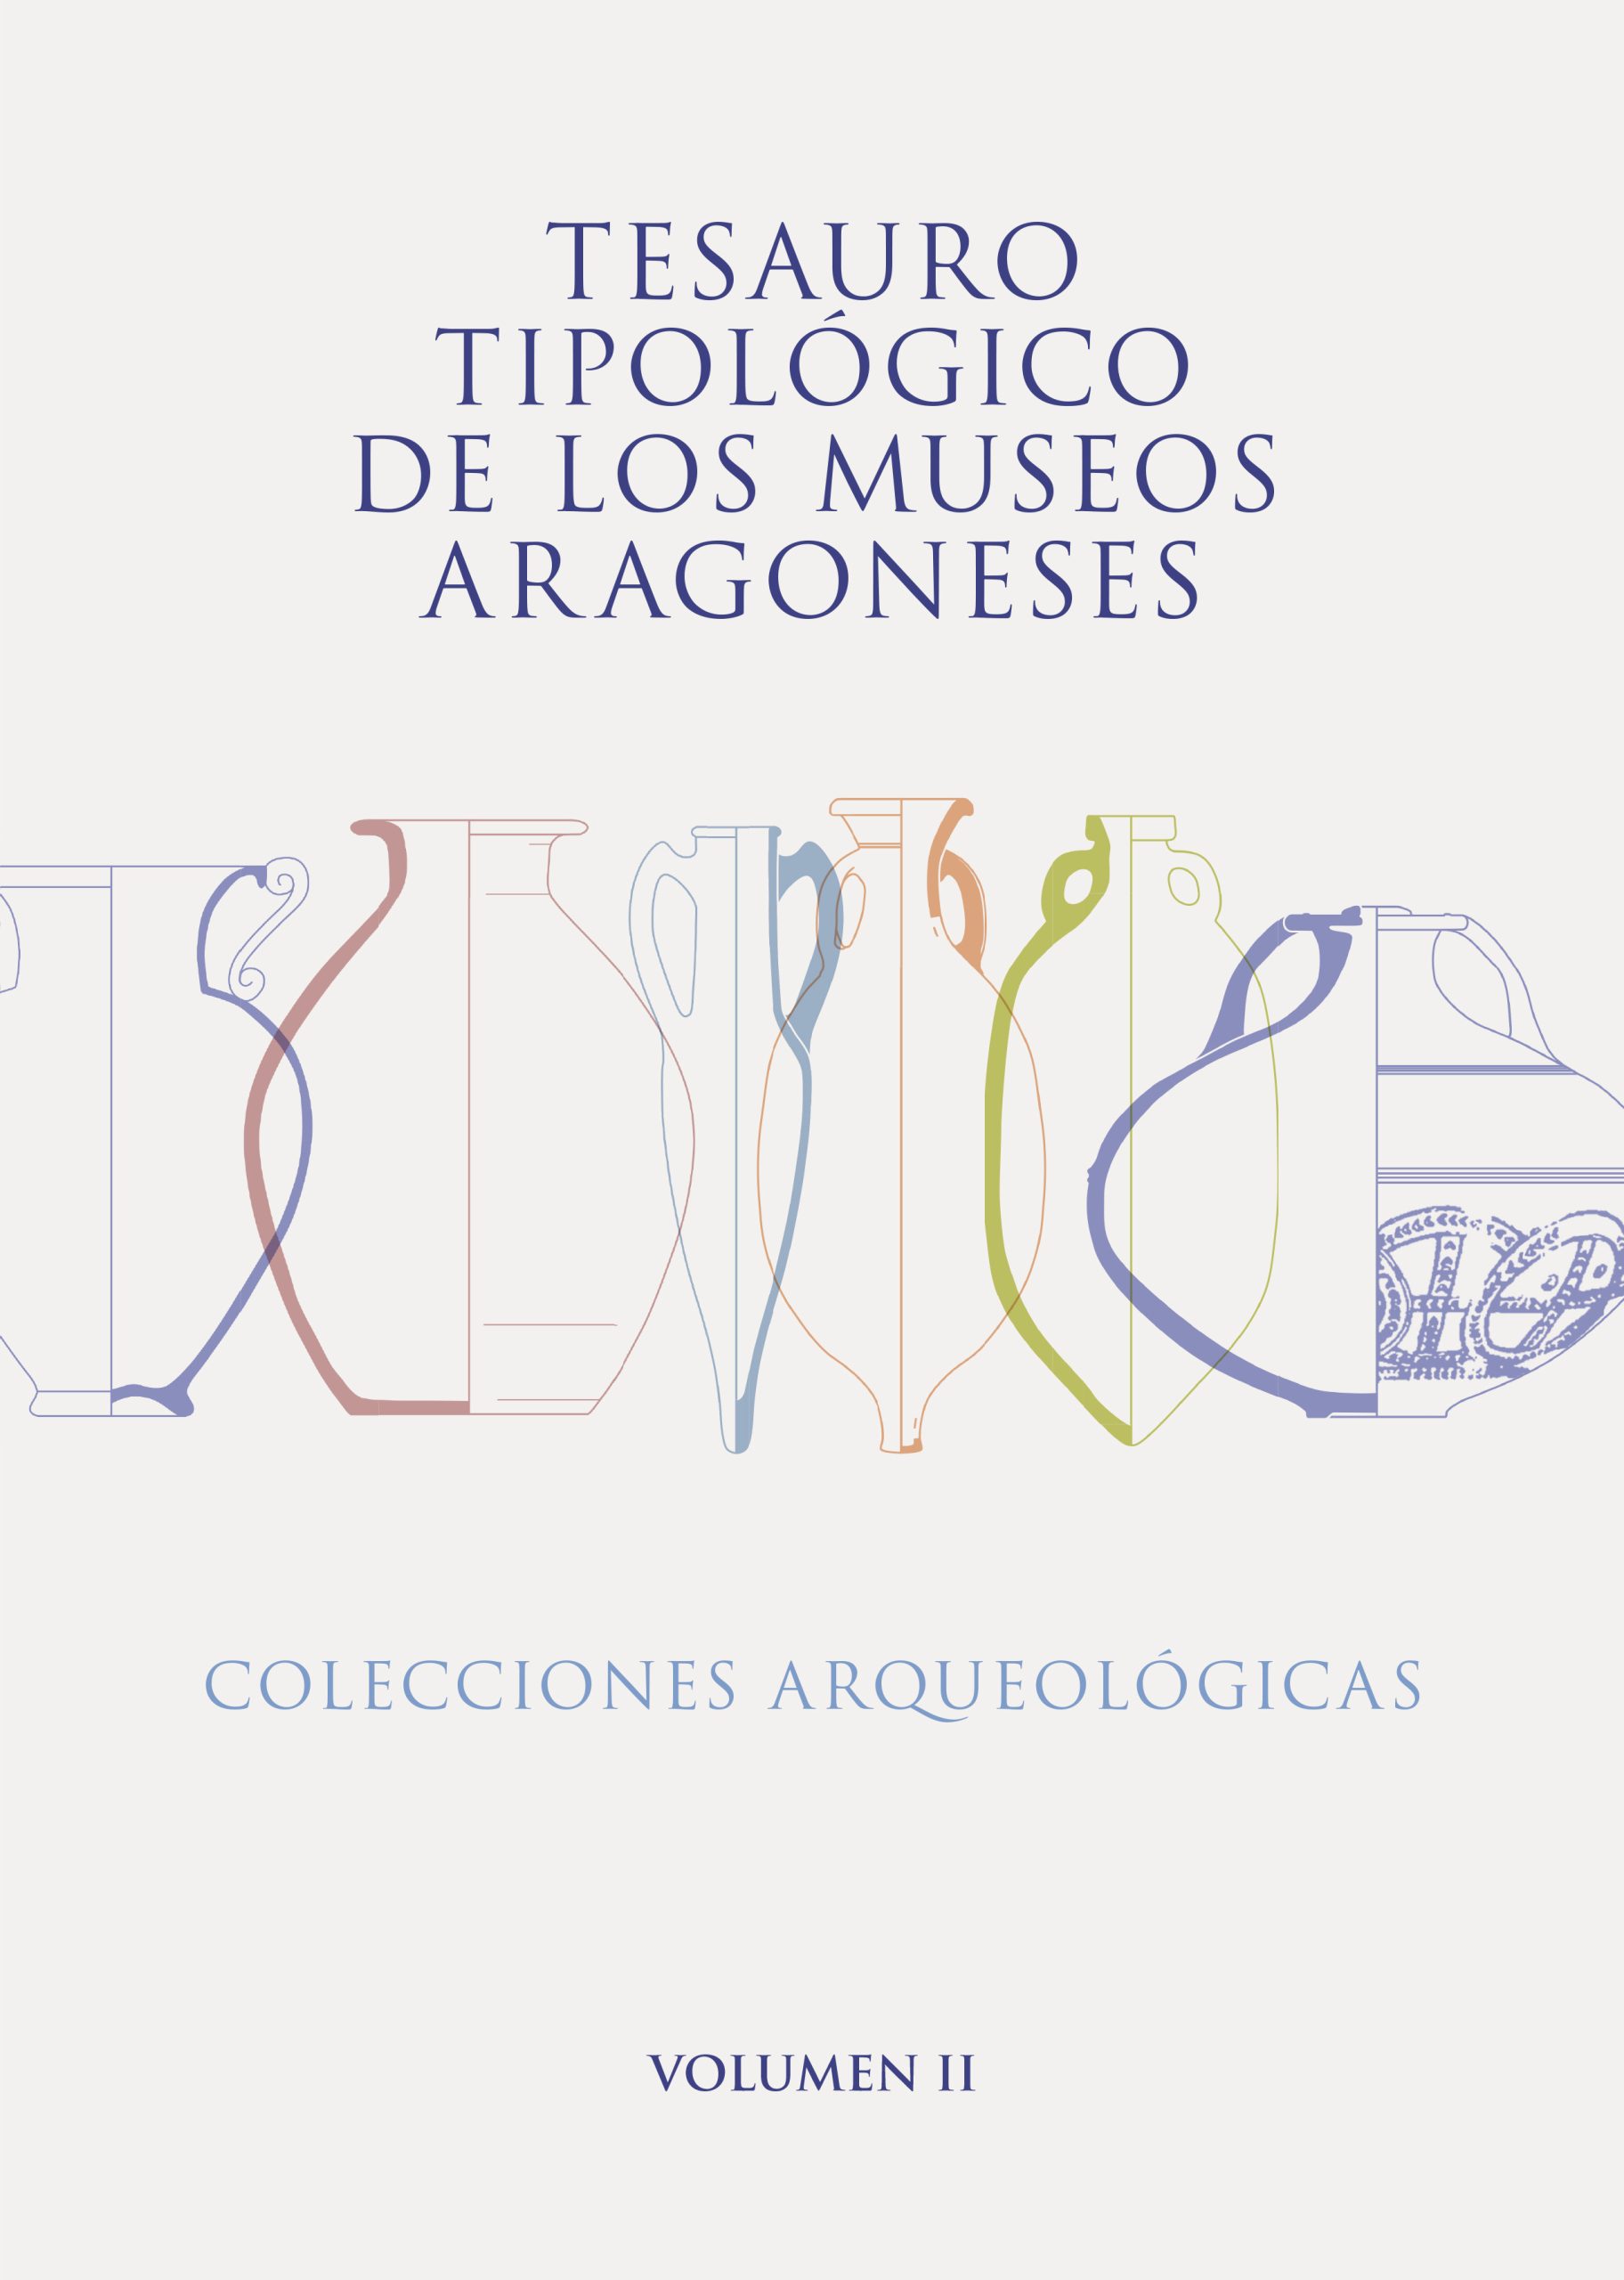 Cubierta Tesauro Arqueología II